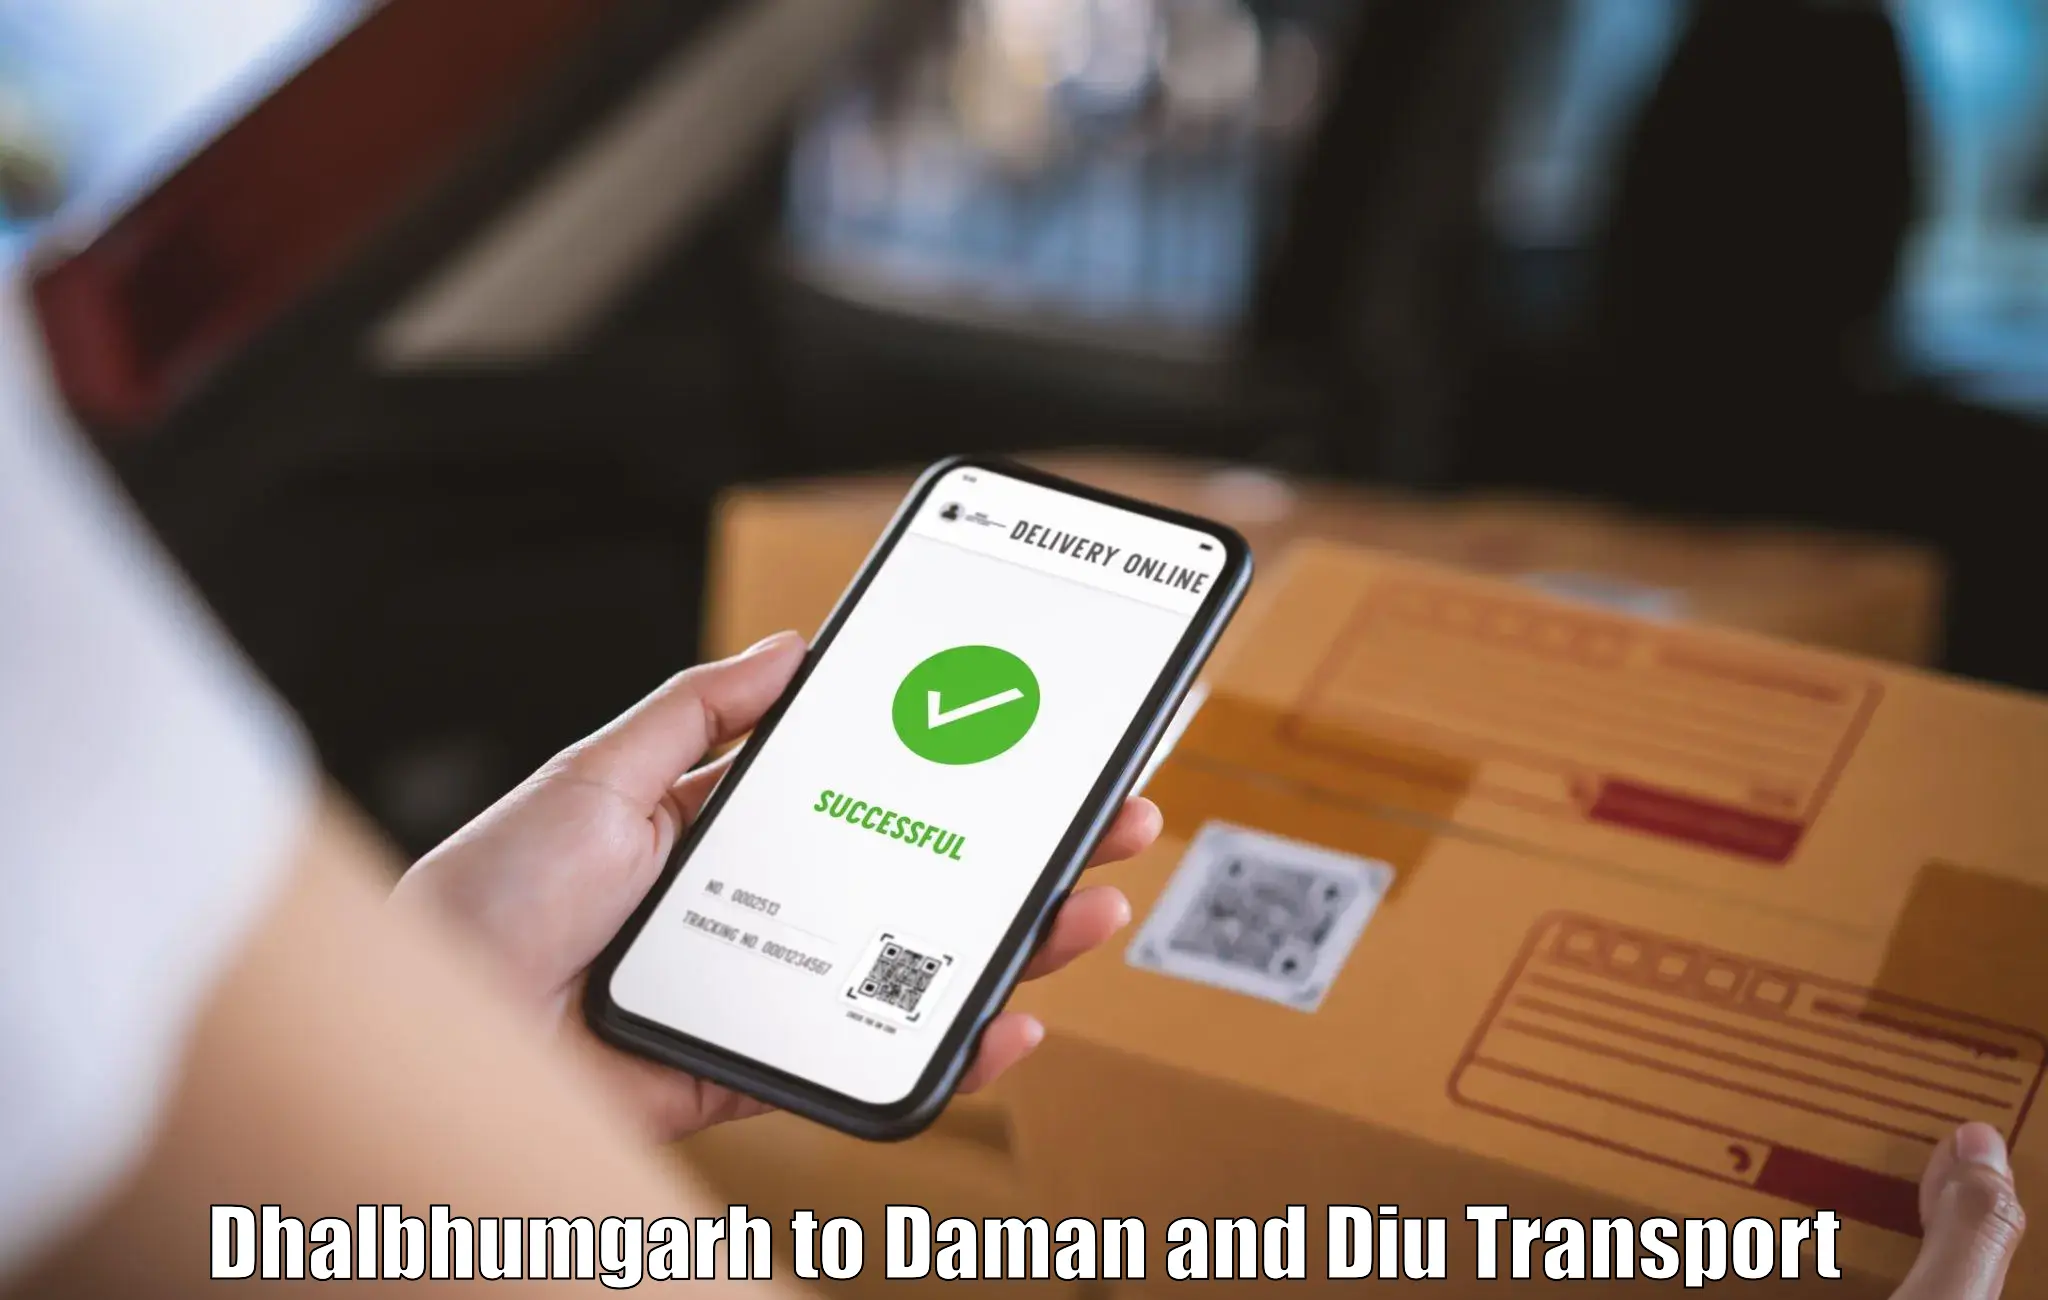 Shipping partner Dhalbhumgarh to Daman